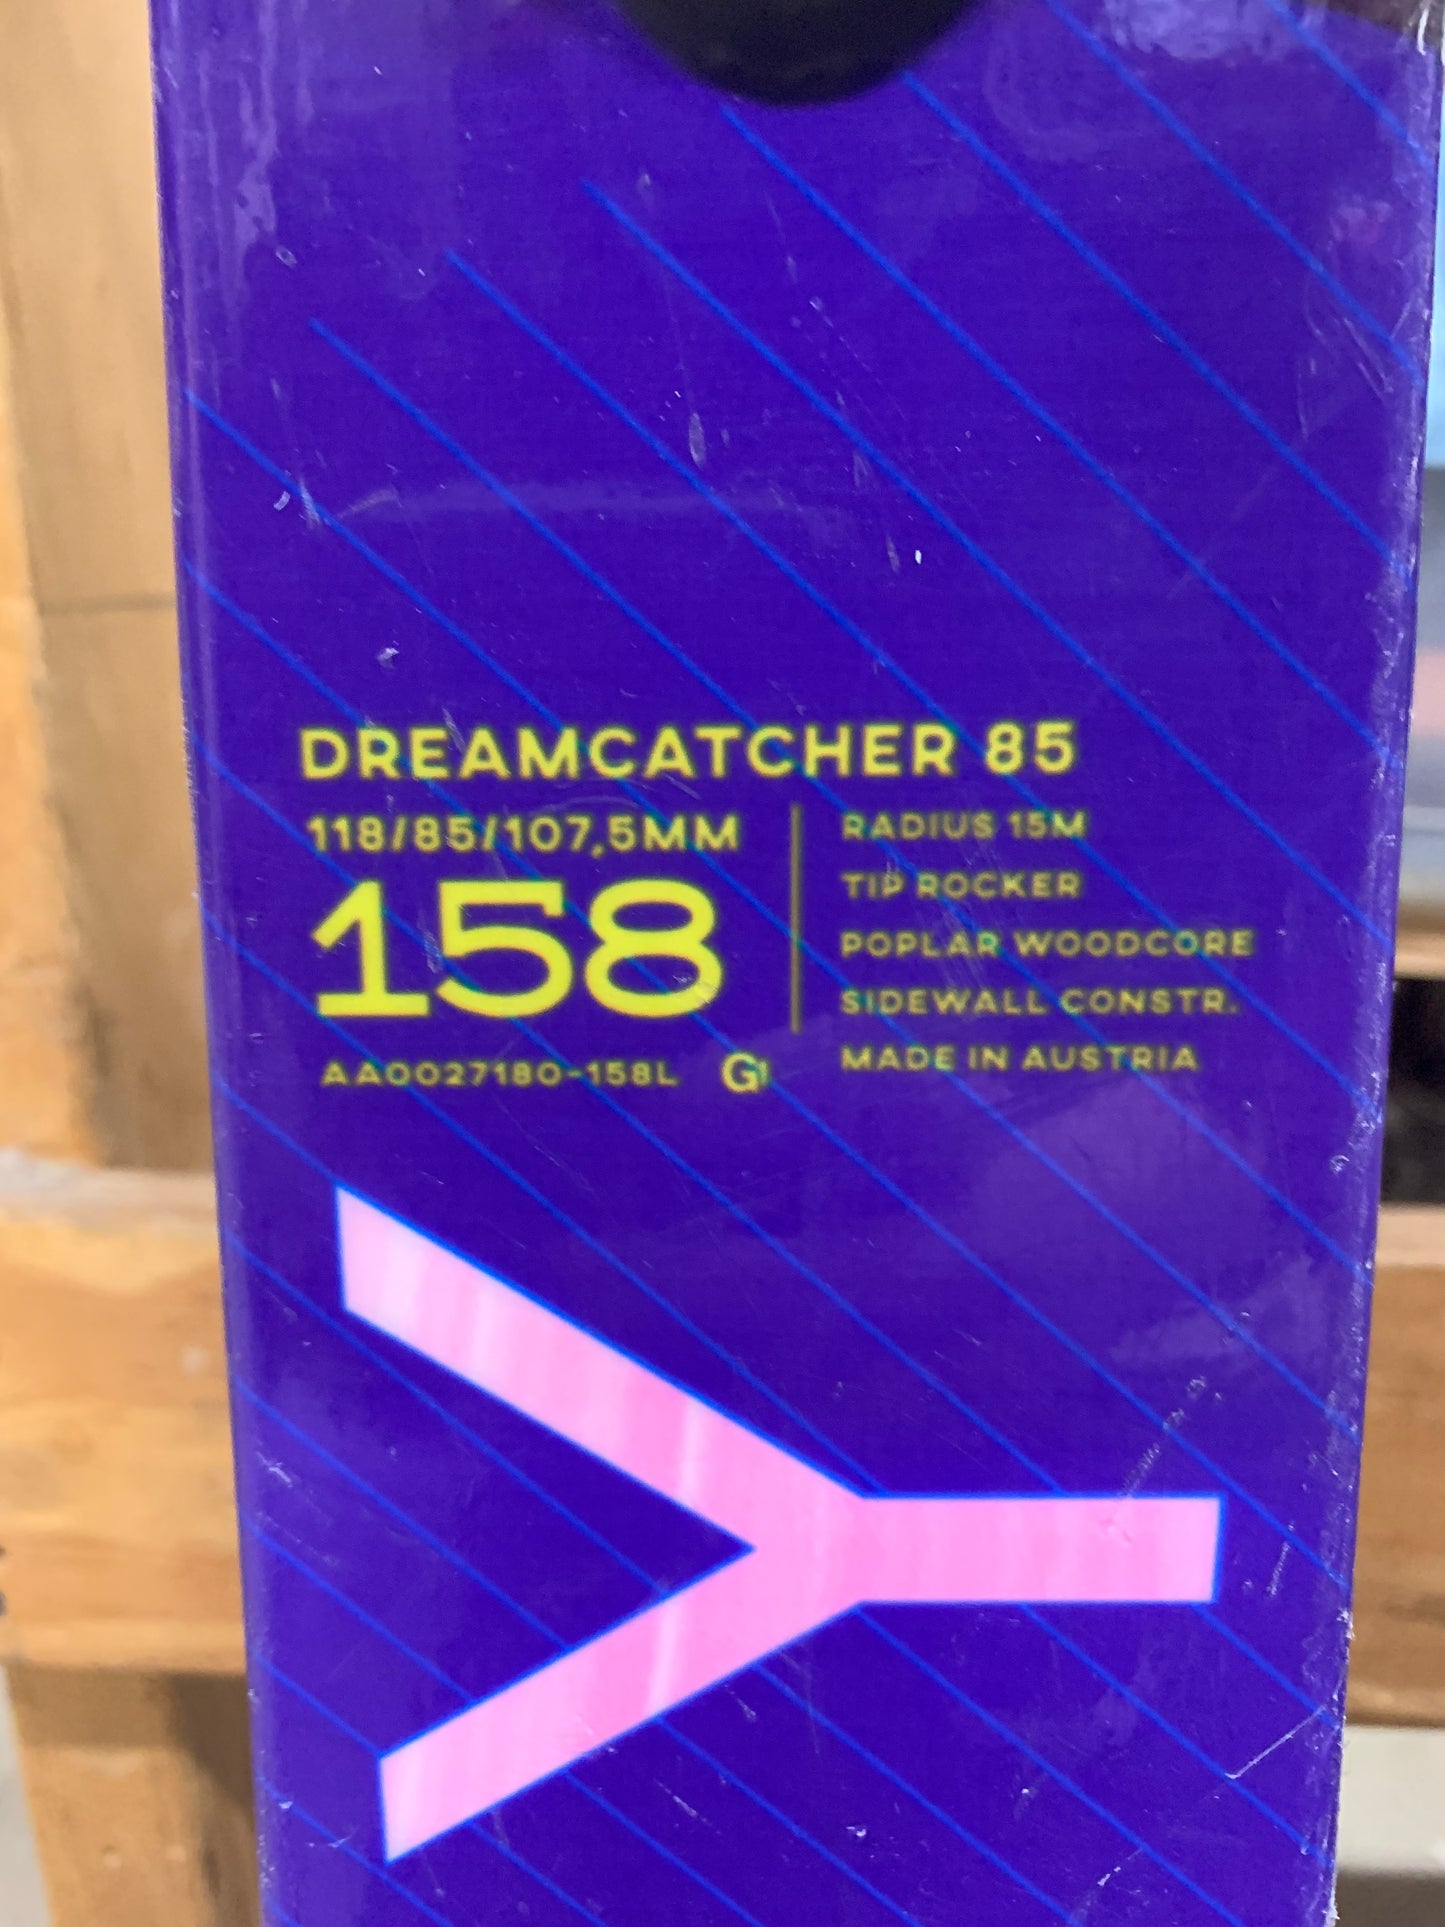 Roxy Skis. Dreamcatcher 85